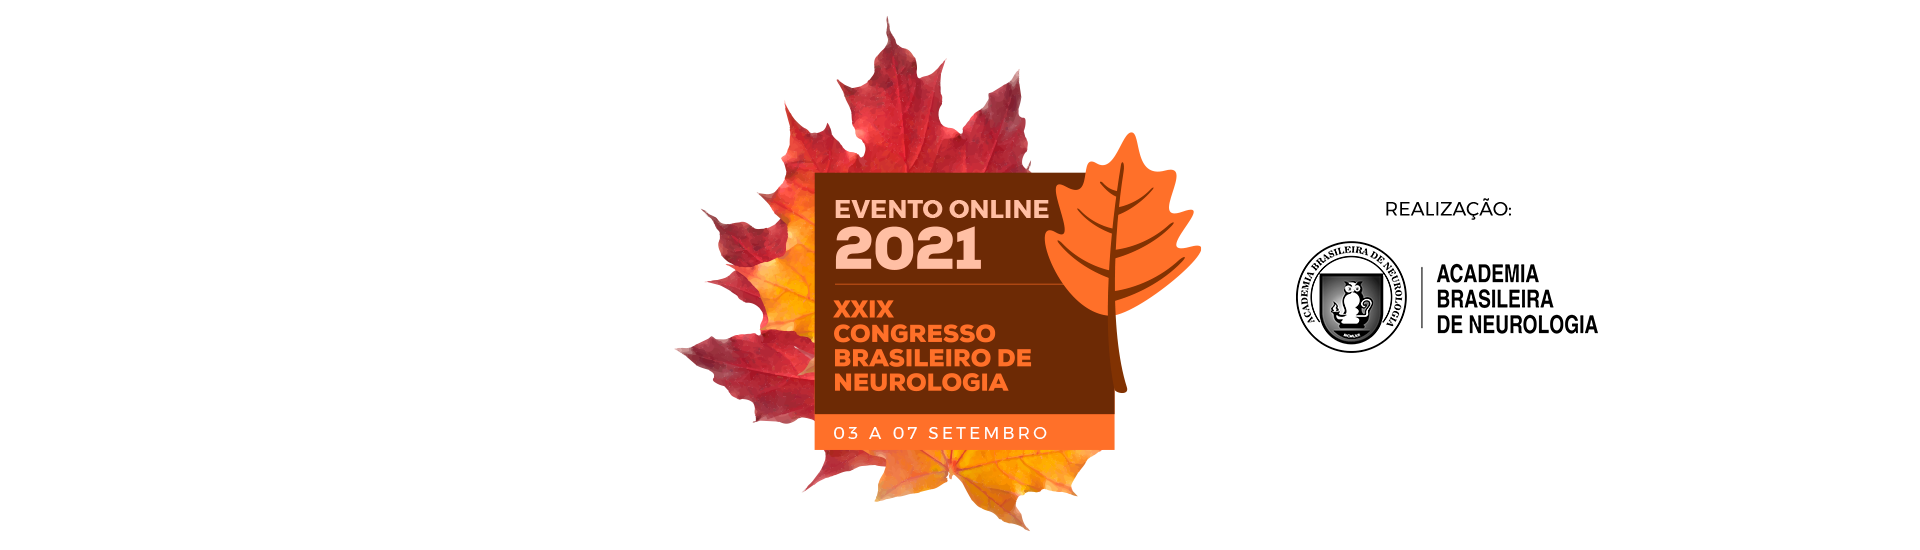 XXIX Congresso Brasileiro de Neurologia